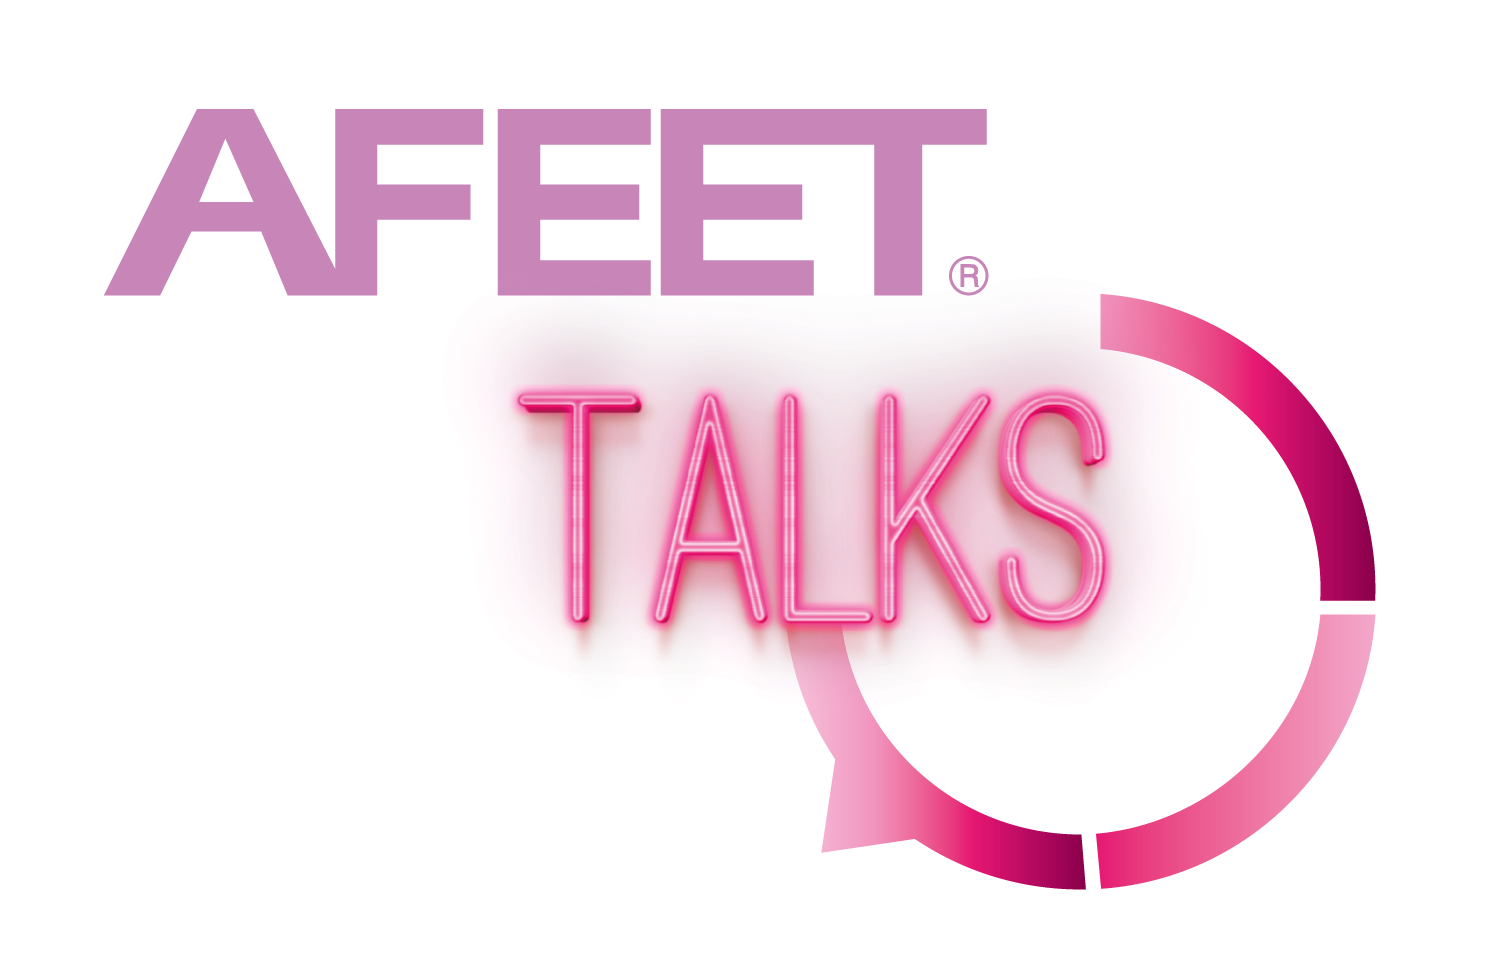 AFEET Talks